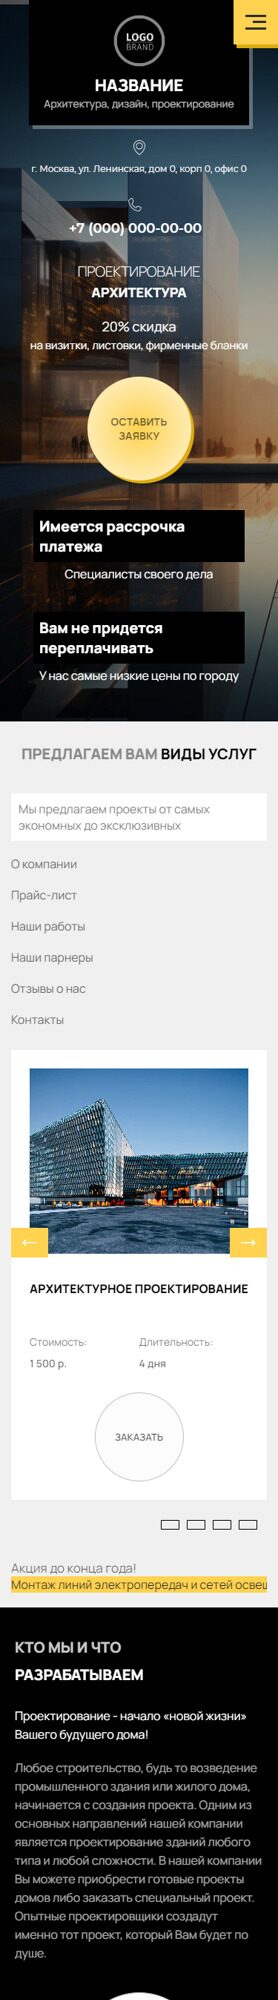 Готовый Сайт-Бизнес № 5405115 - Архитектура, дизайн, проектирование (Мобильная версия)